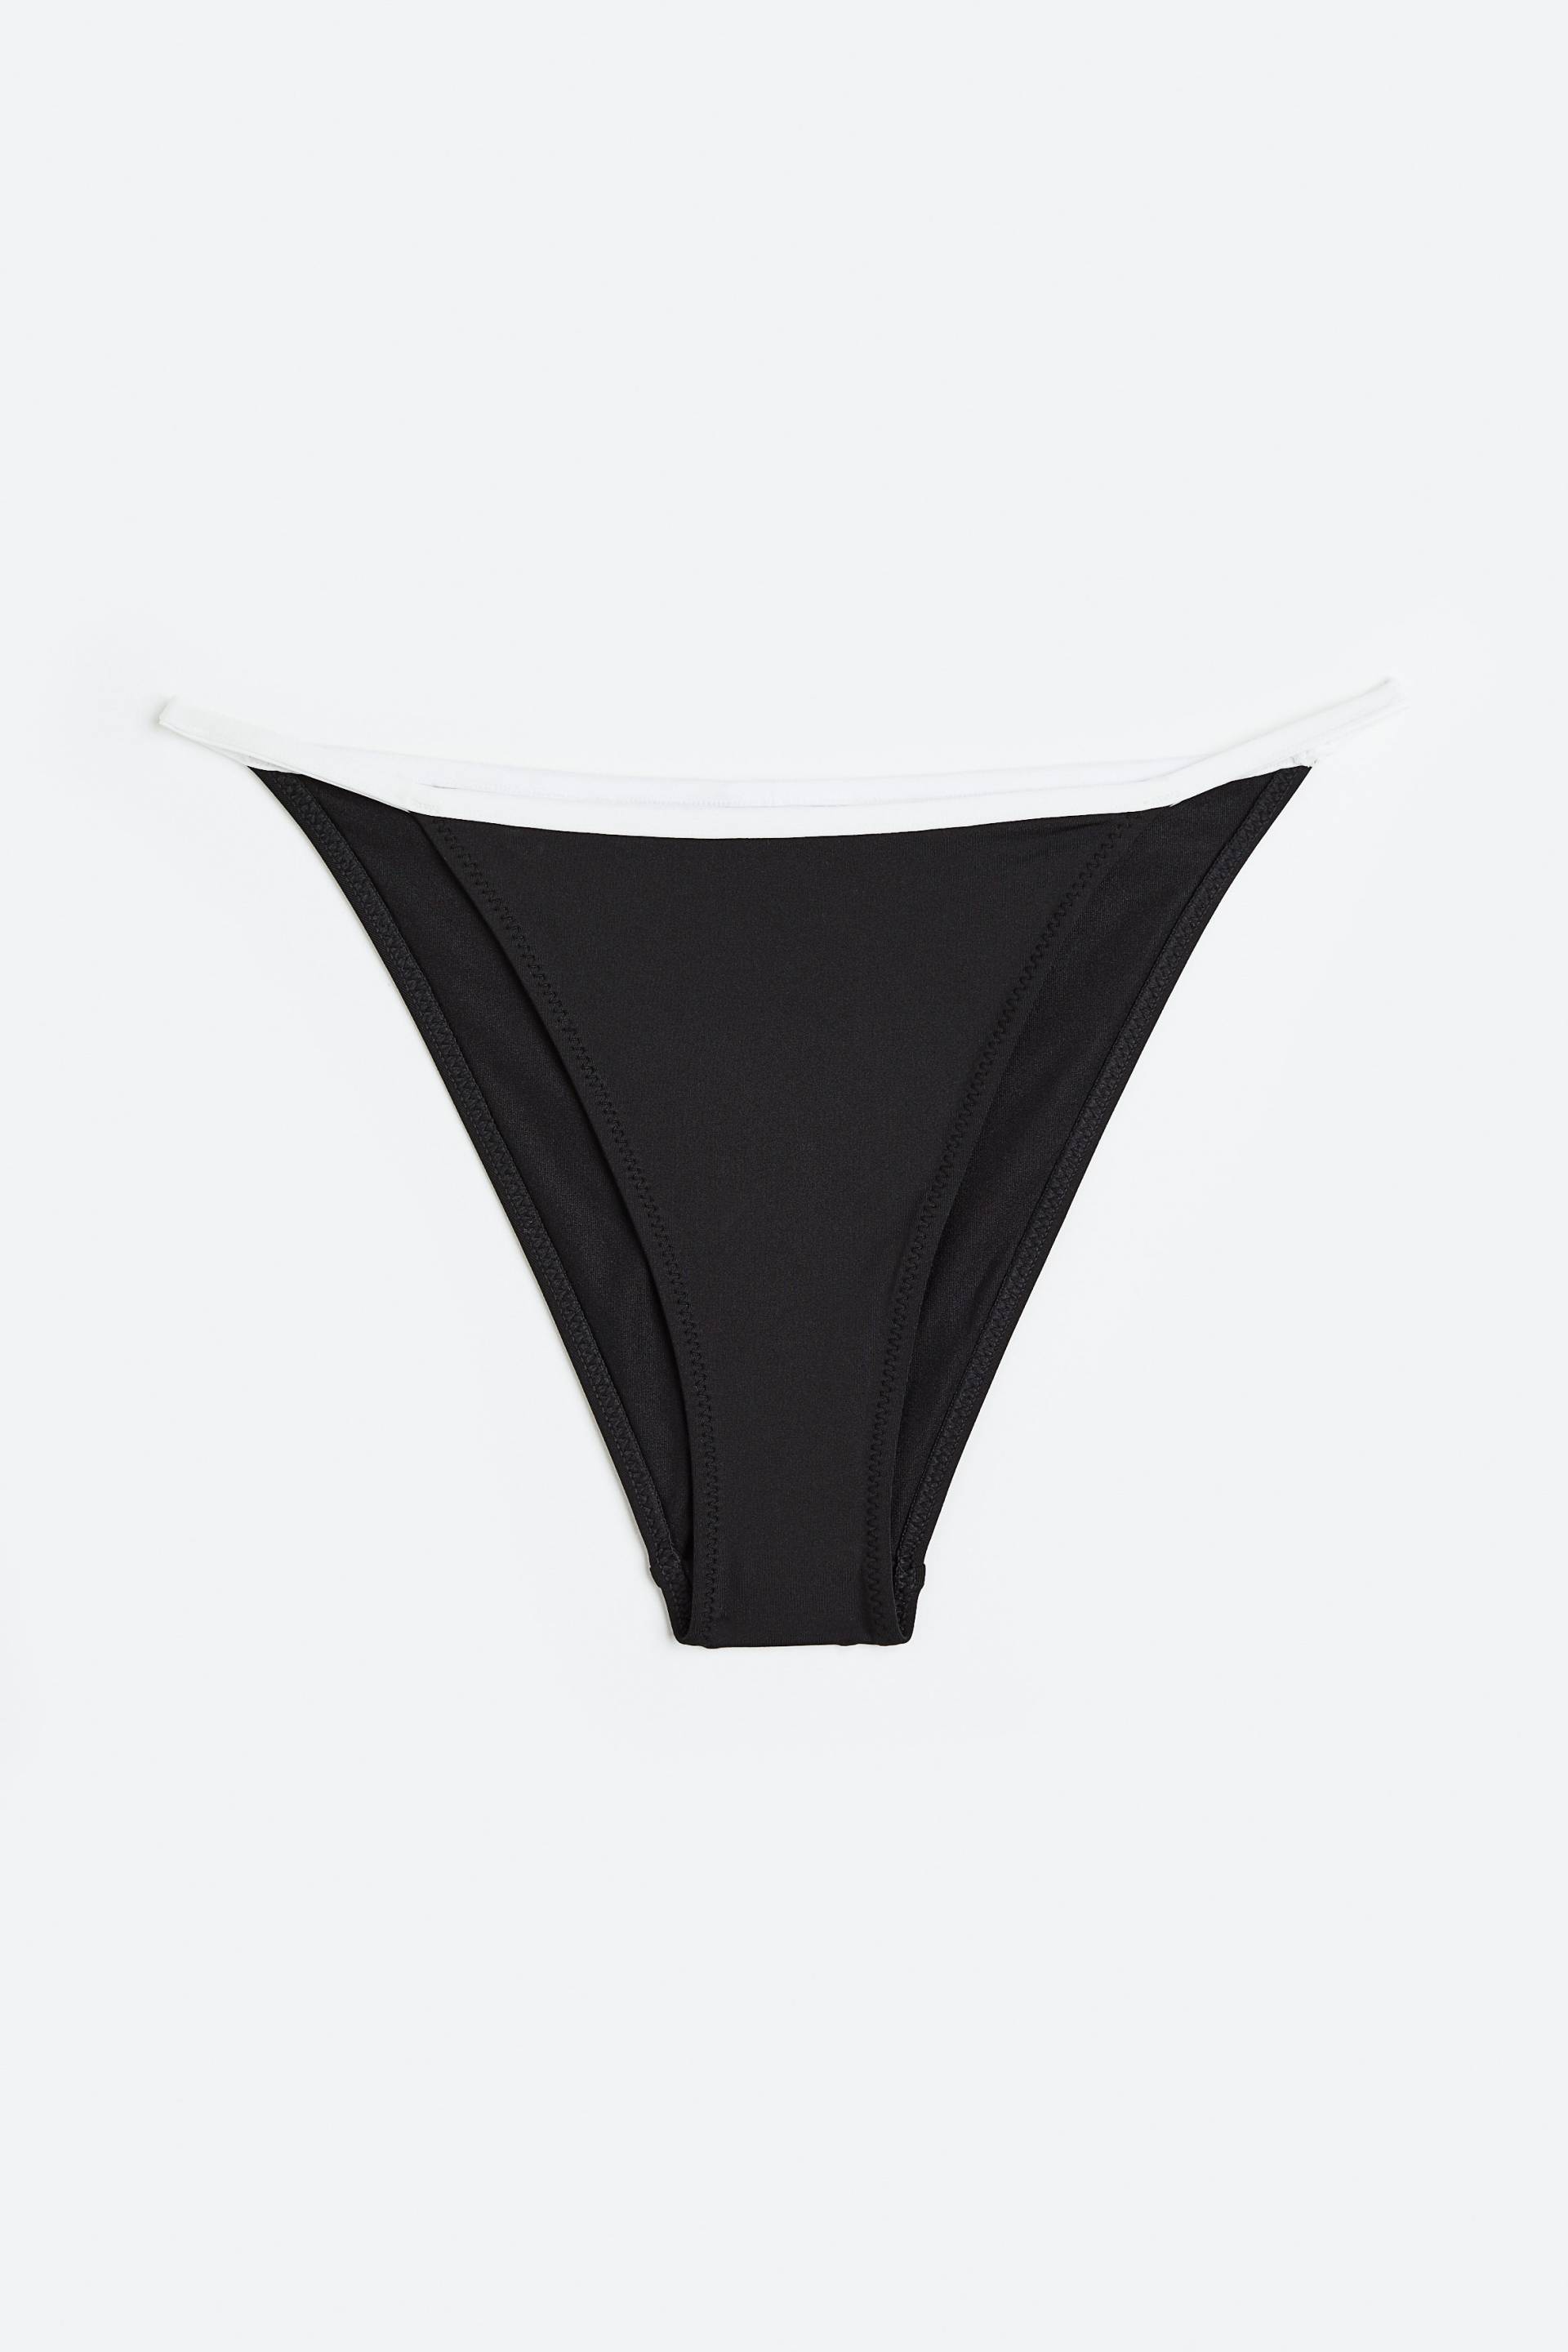 H&M Bikinihose Schwarz, Bikini-Unterteil in Größe 48. Farbe: Black 002 von H&M